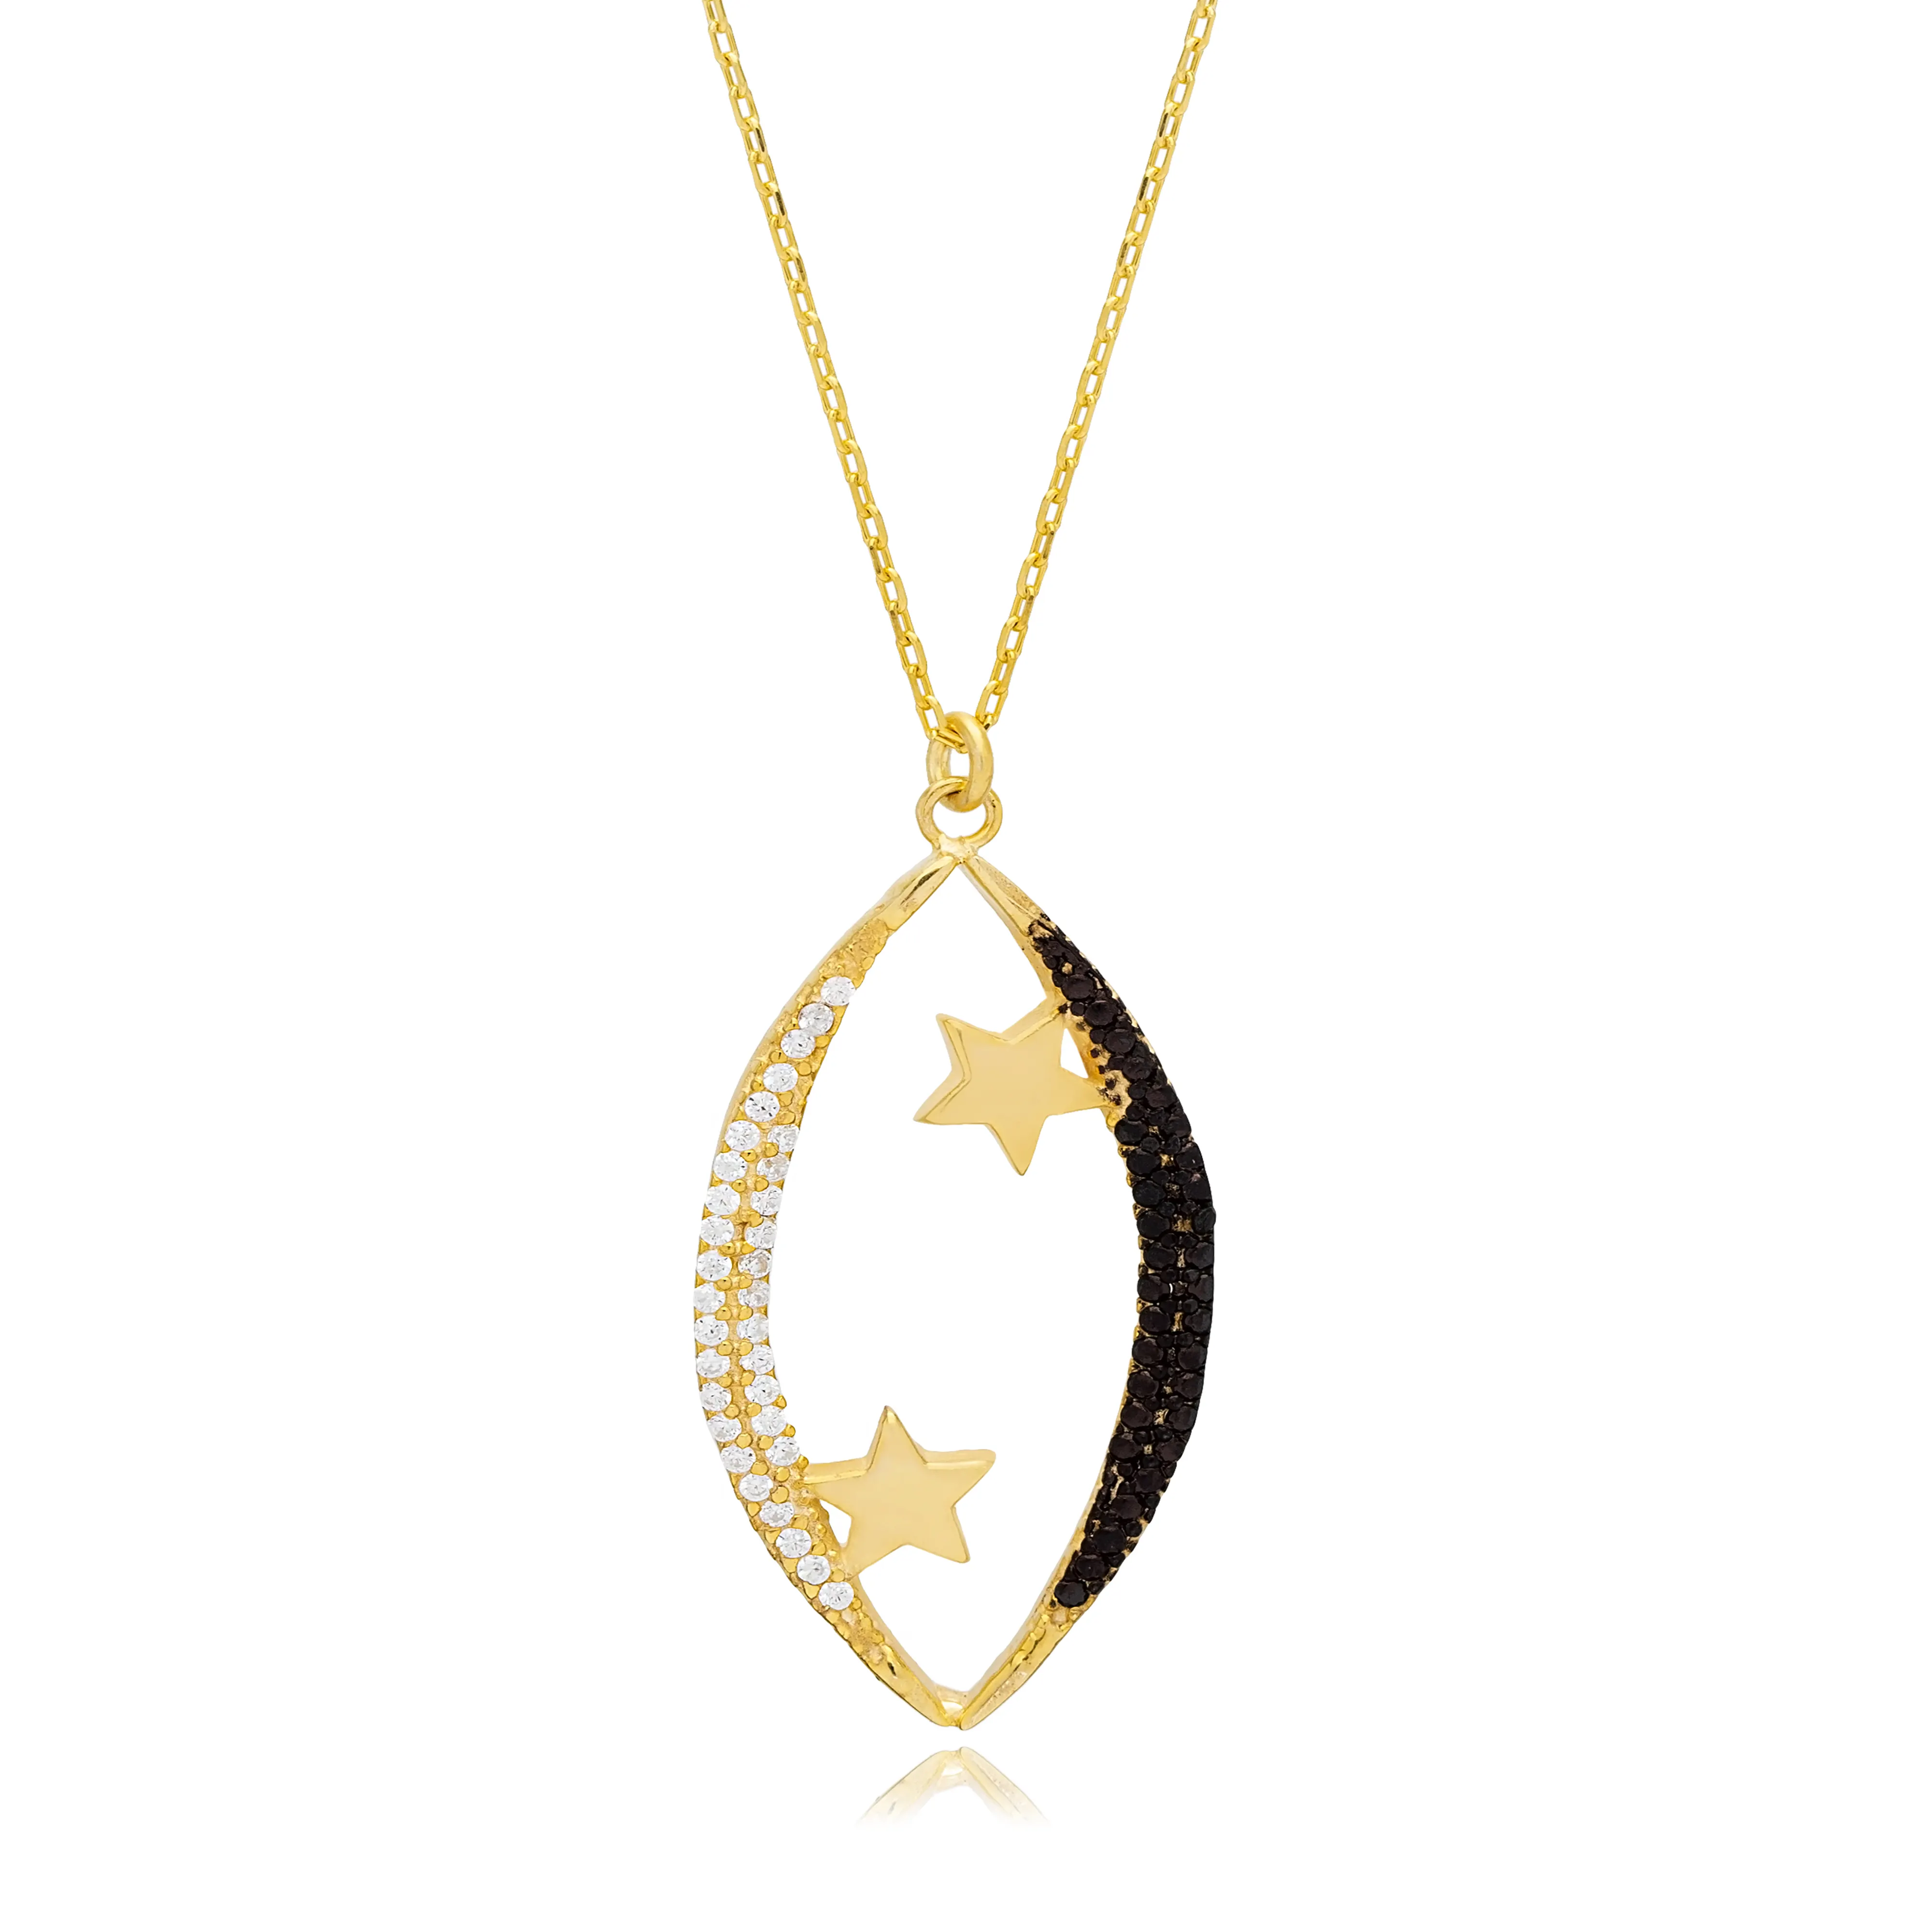 Ожерелье с подвеской в виде Луны и звезды из чистого черного циркона, турецкое ювелирное изделие ручной работы из стерлингового серебра 925 пробы, оптовая продажа